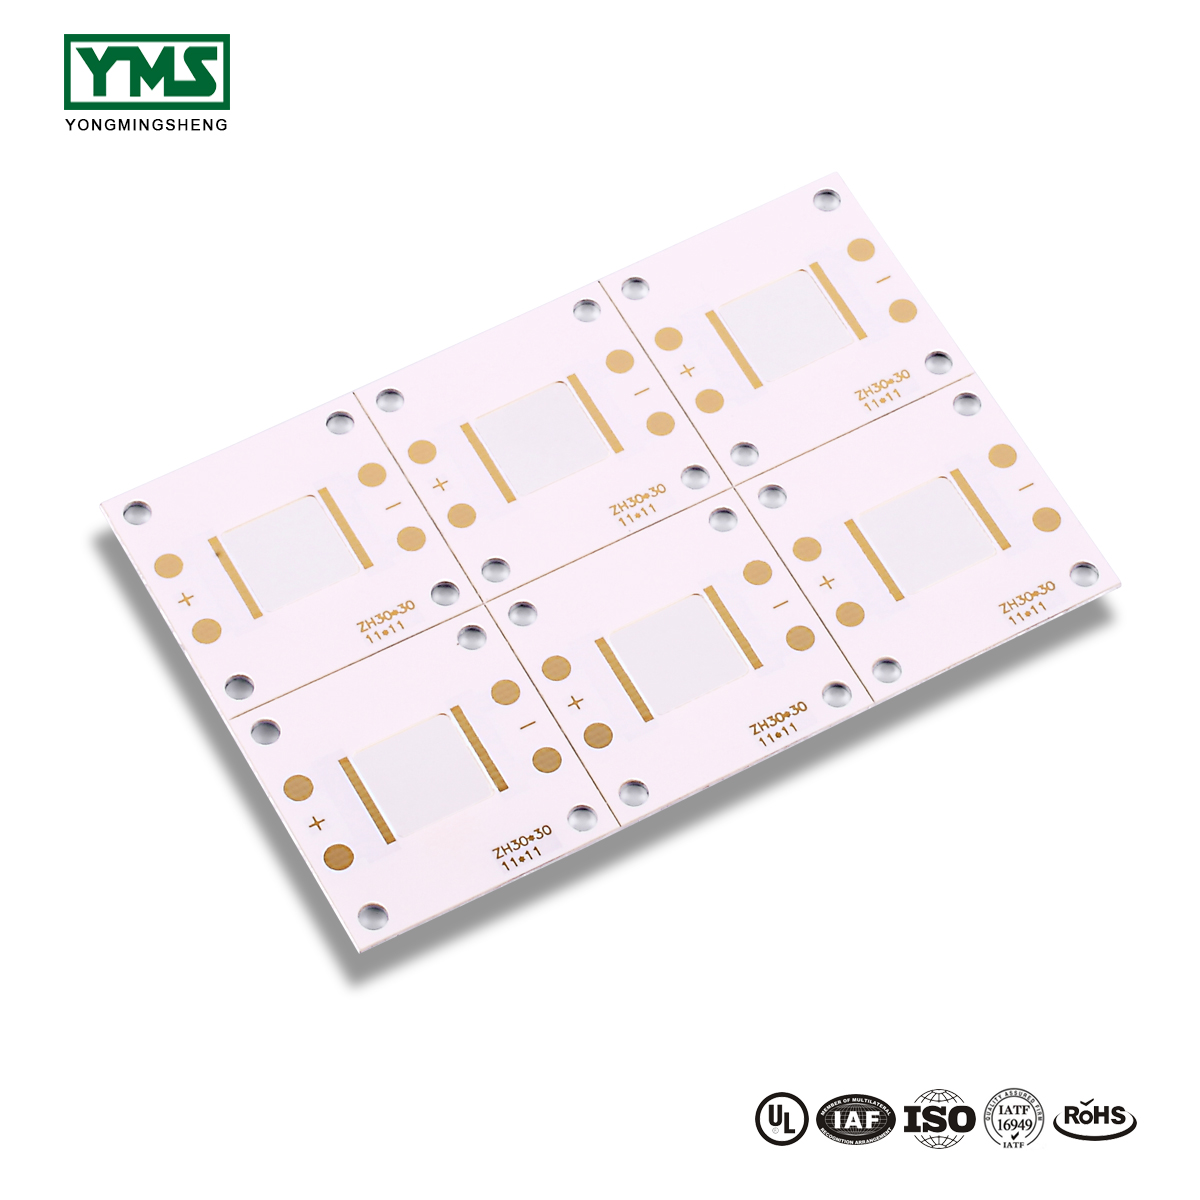 Factory Cheap Aluminium Metal Core Pcb - 1Layer mirror Aluminum Base Board | YMSPCB – Yongmingsheng